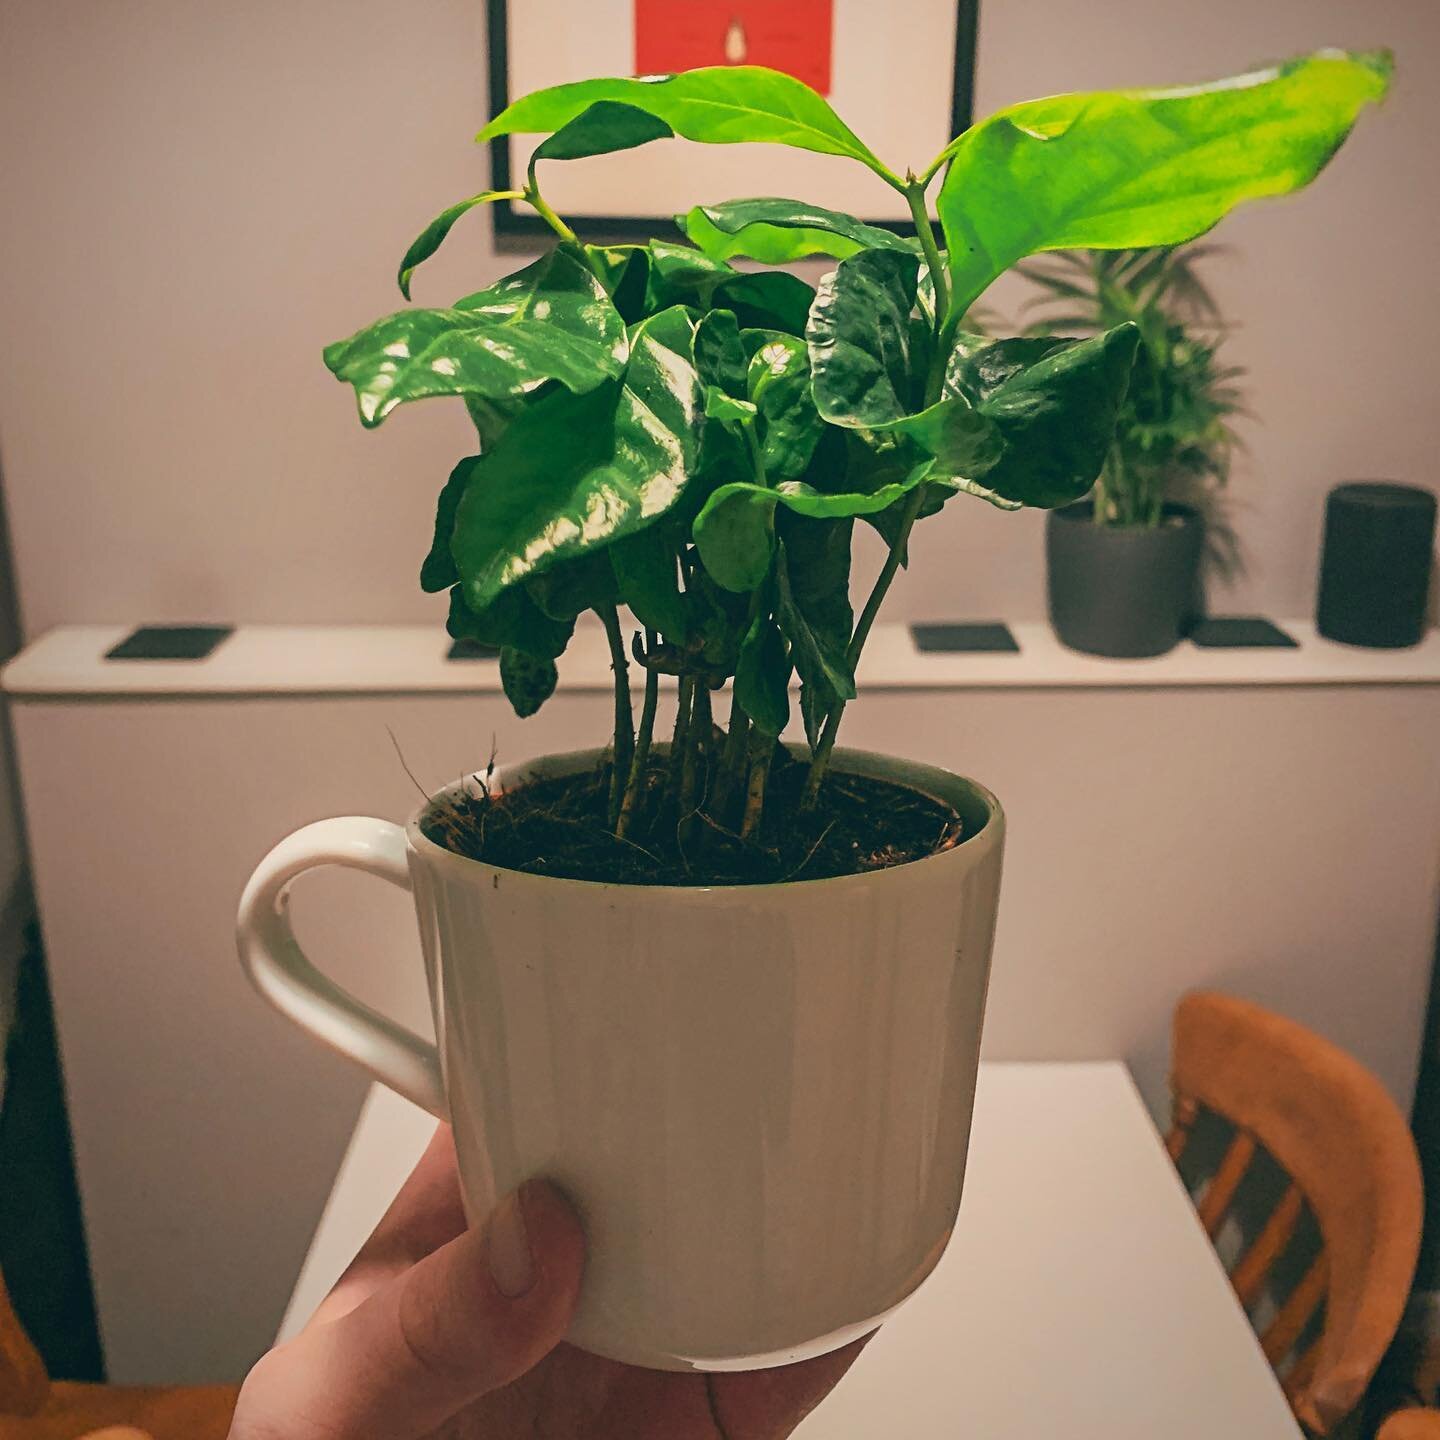 Coffee plant in a coffee mug